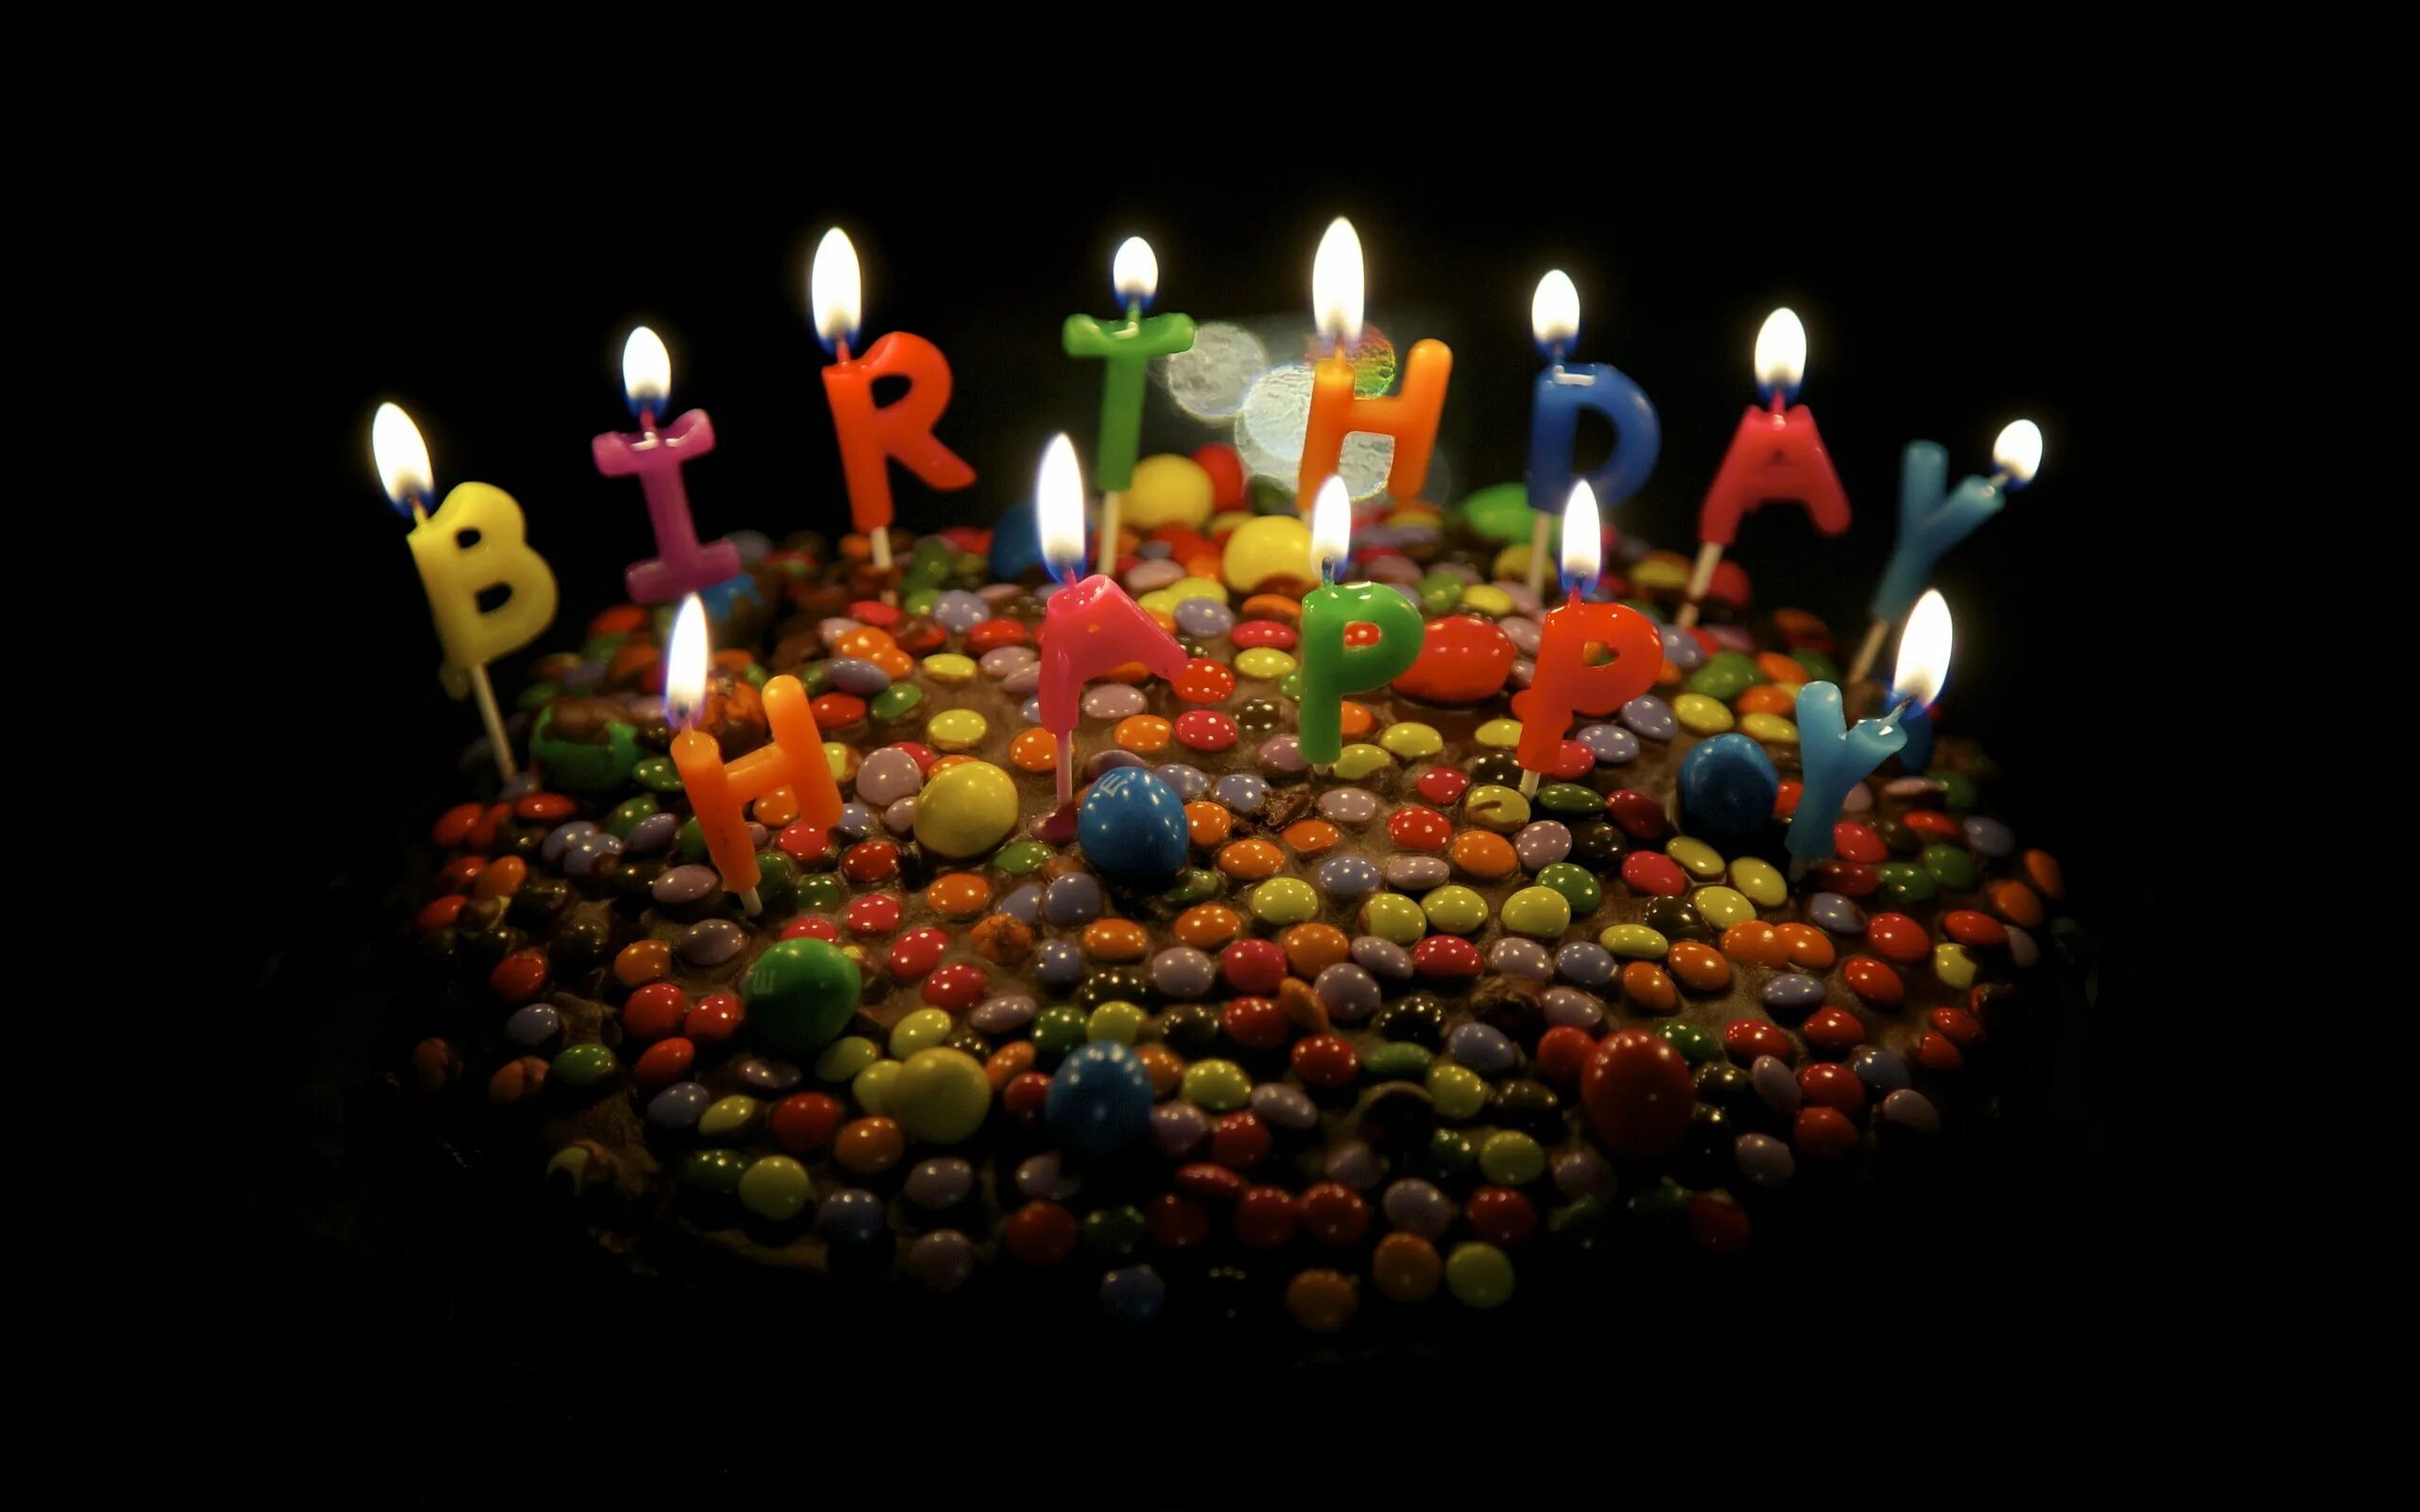 День рождение 27 12. Тортик с днем рождения. Свеча в торт "с днем рождения". Торт со свечками. Свечи для торта.